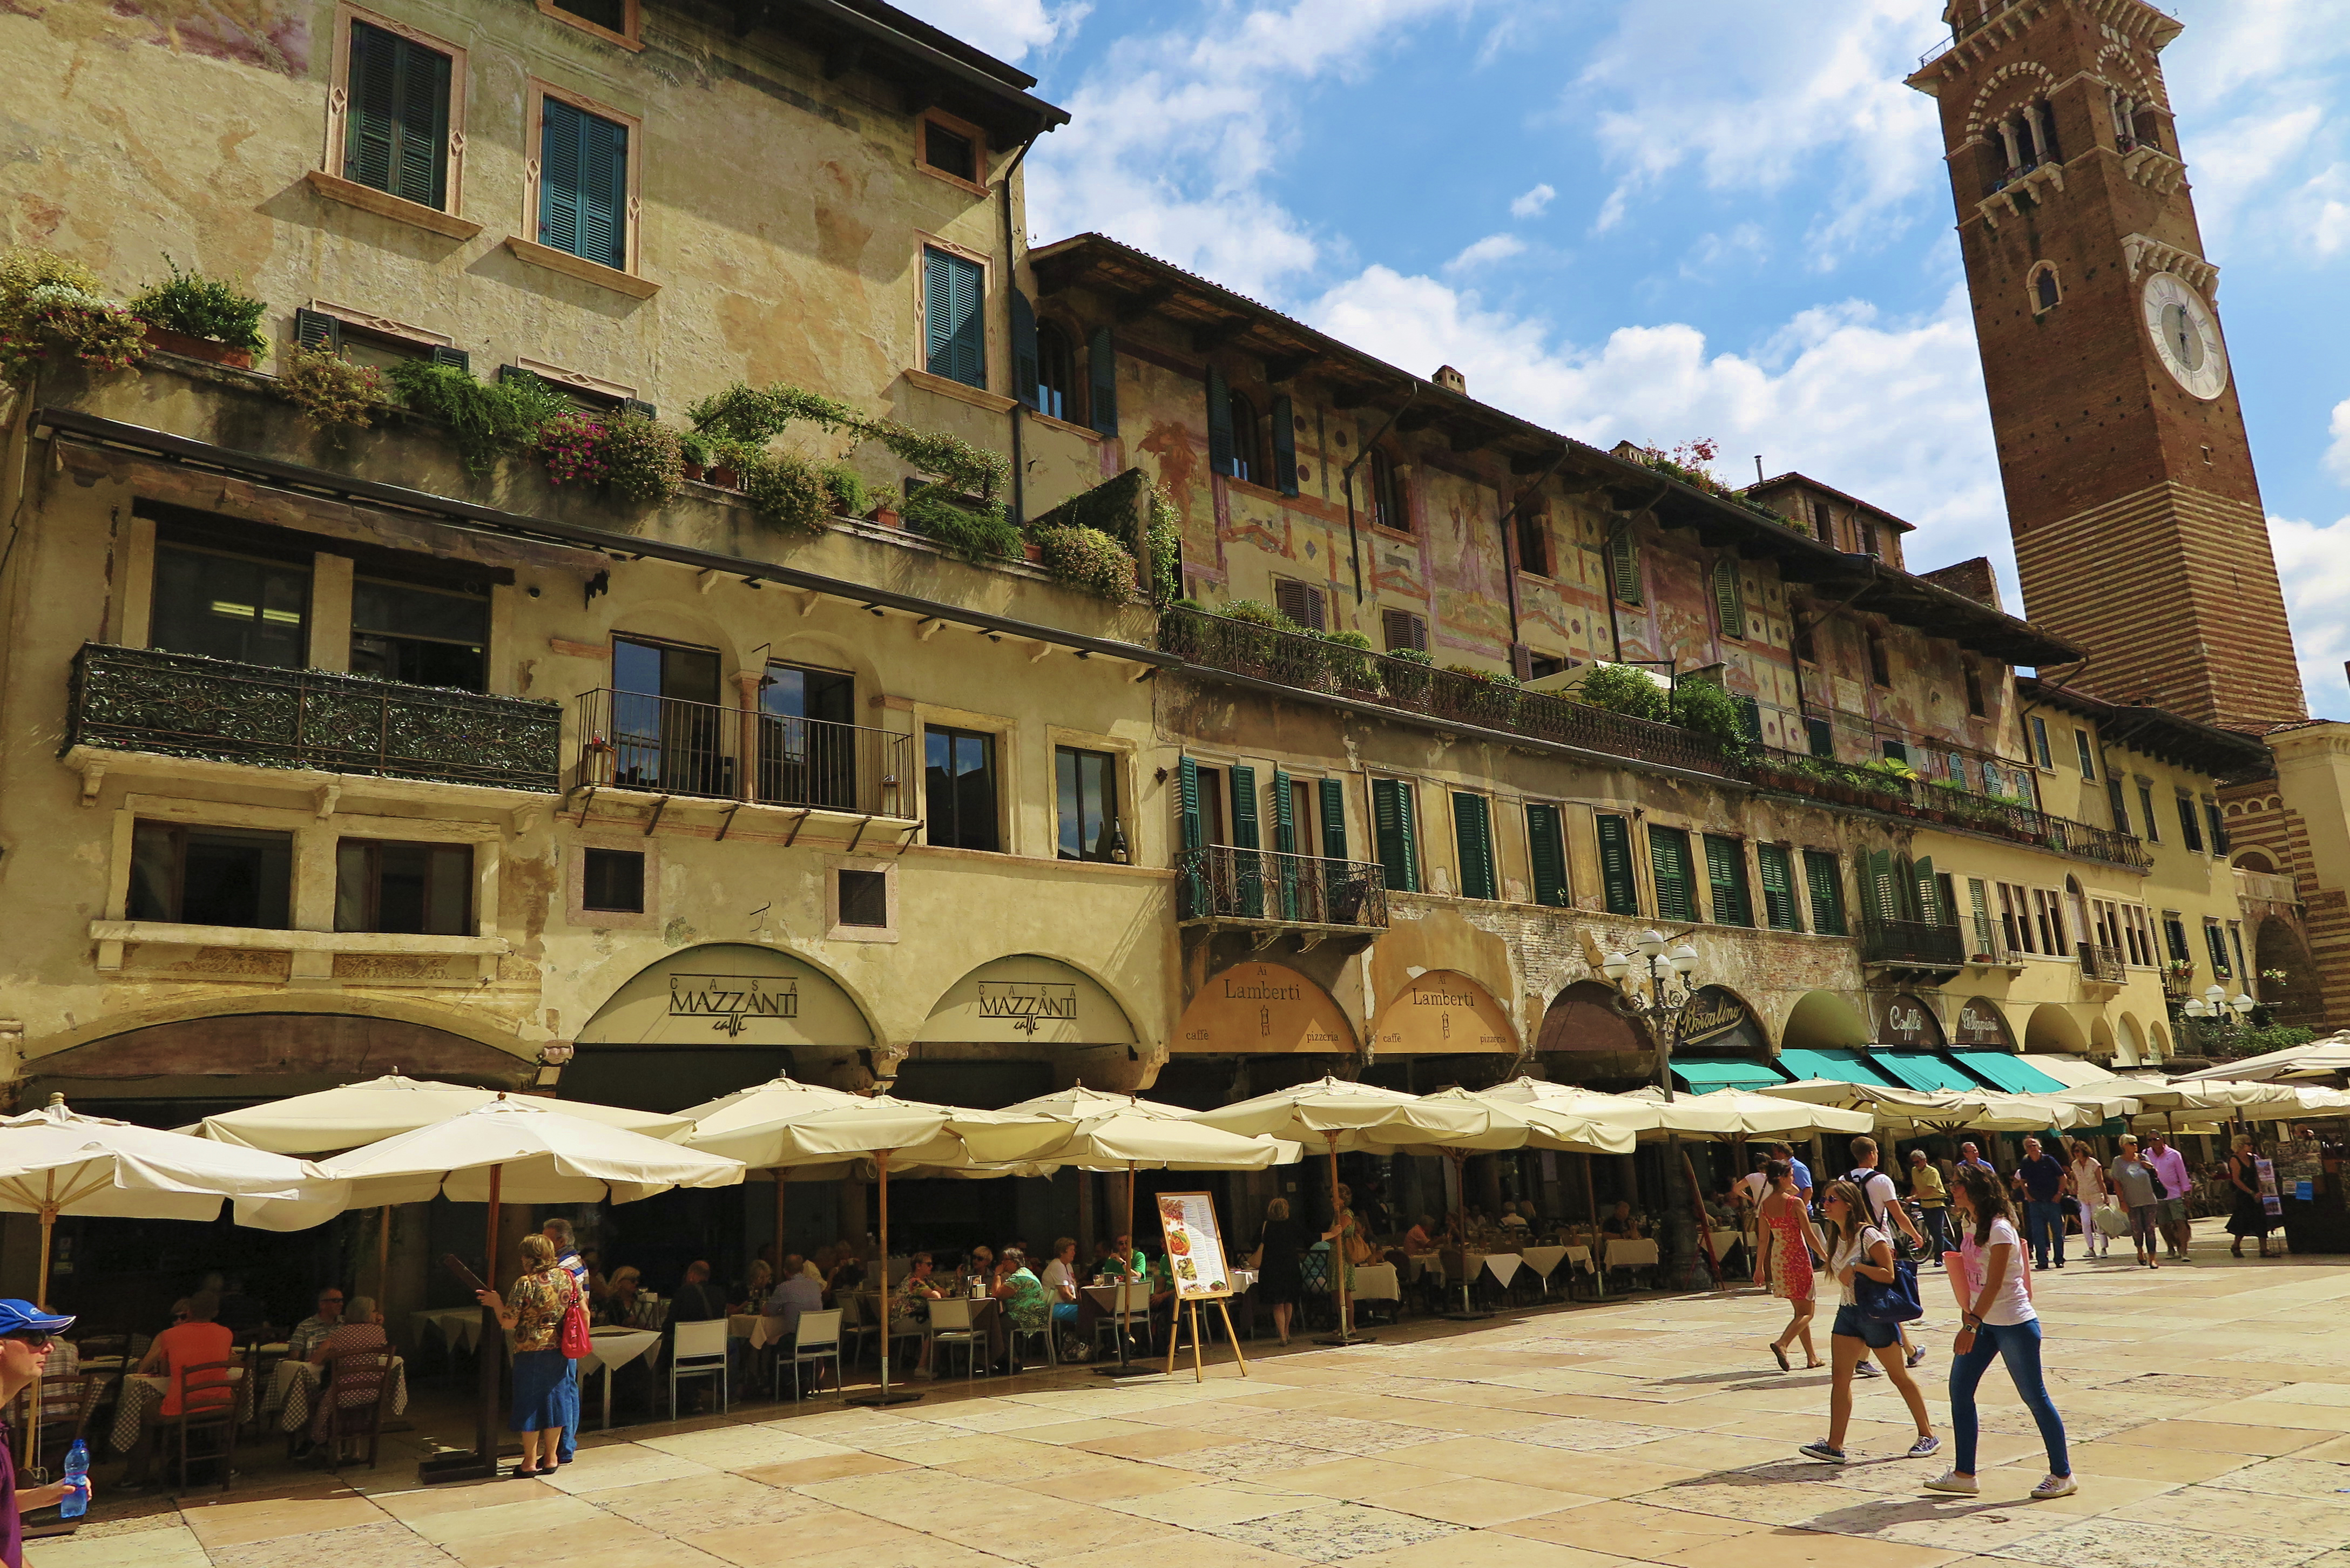 Plazza della Erbe in Verona